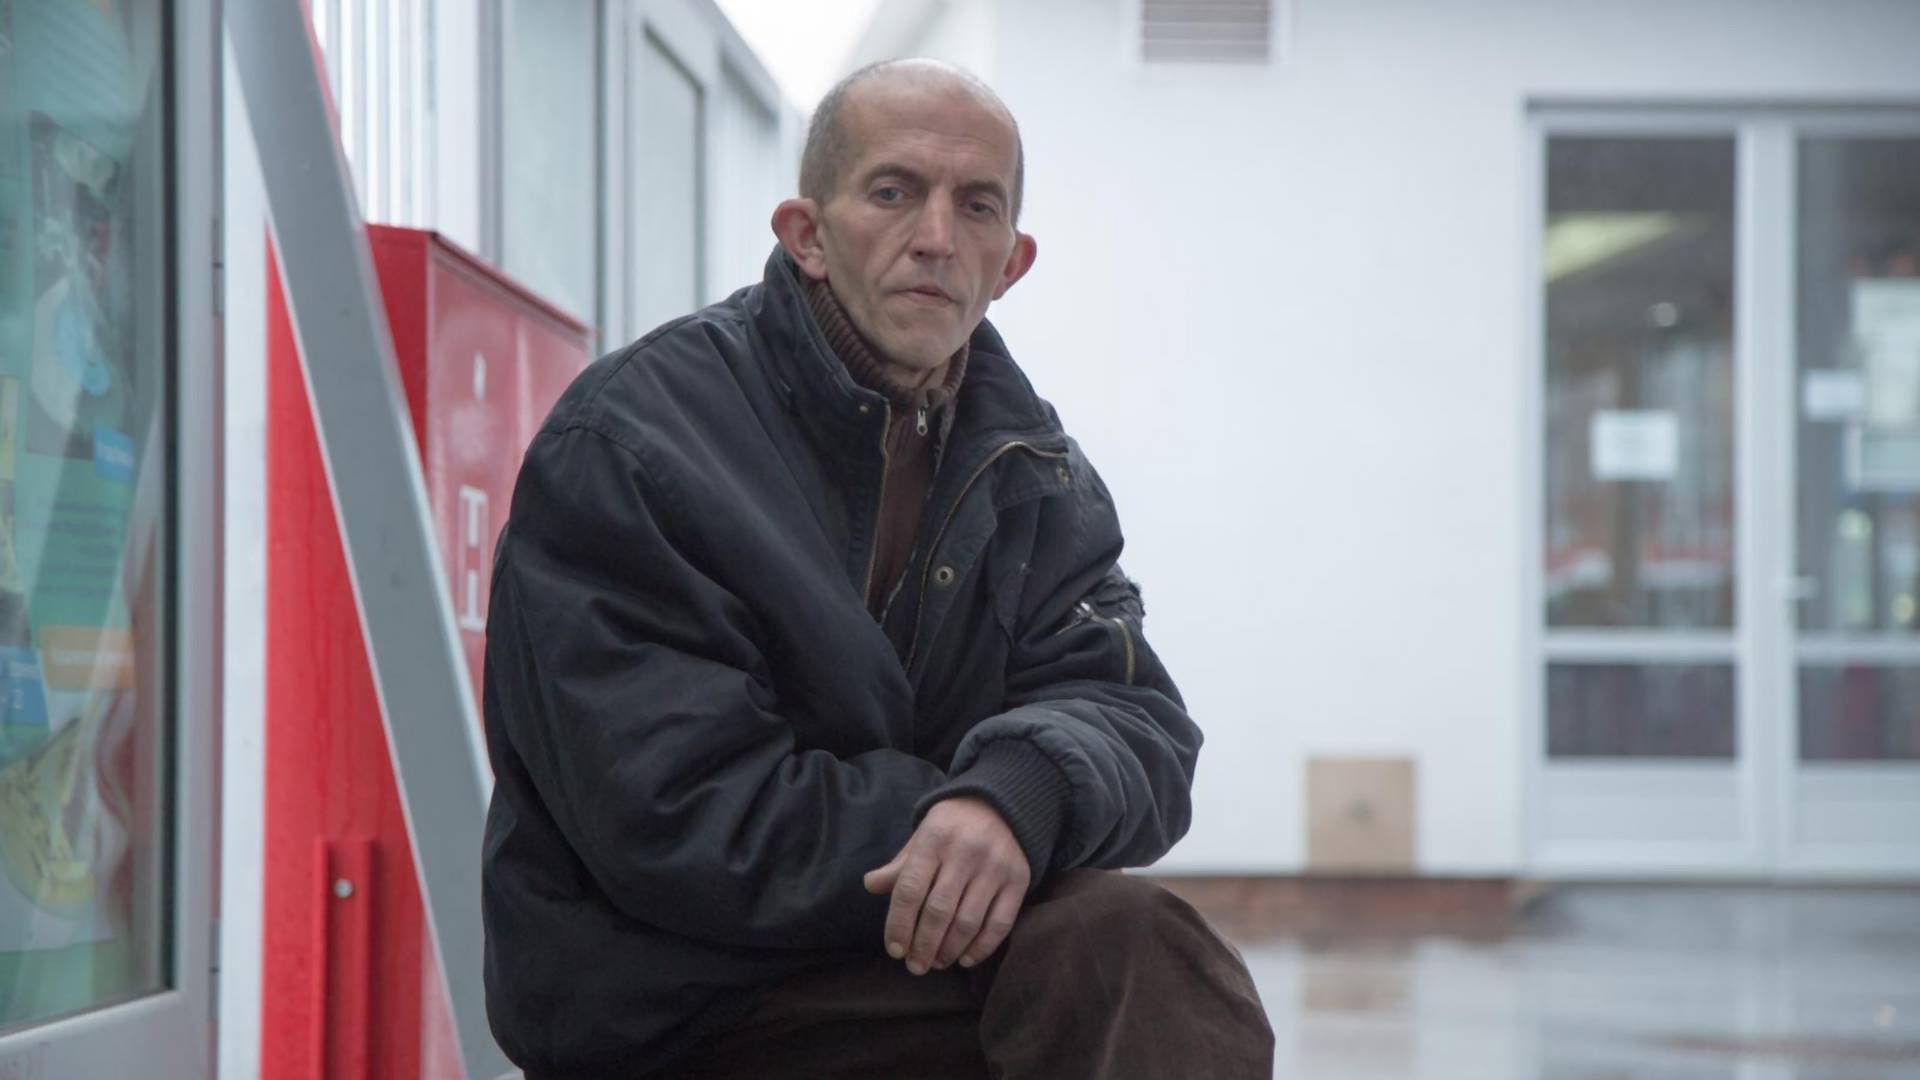 Đorđe Joksimović, po kojem je snimljen film "Otac", započeo štrajk glađu jer mu i pored obećanja ipak nisu vratili decu